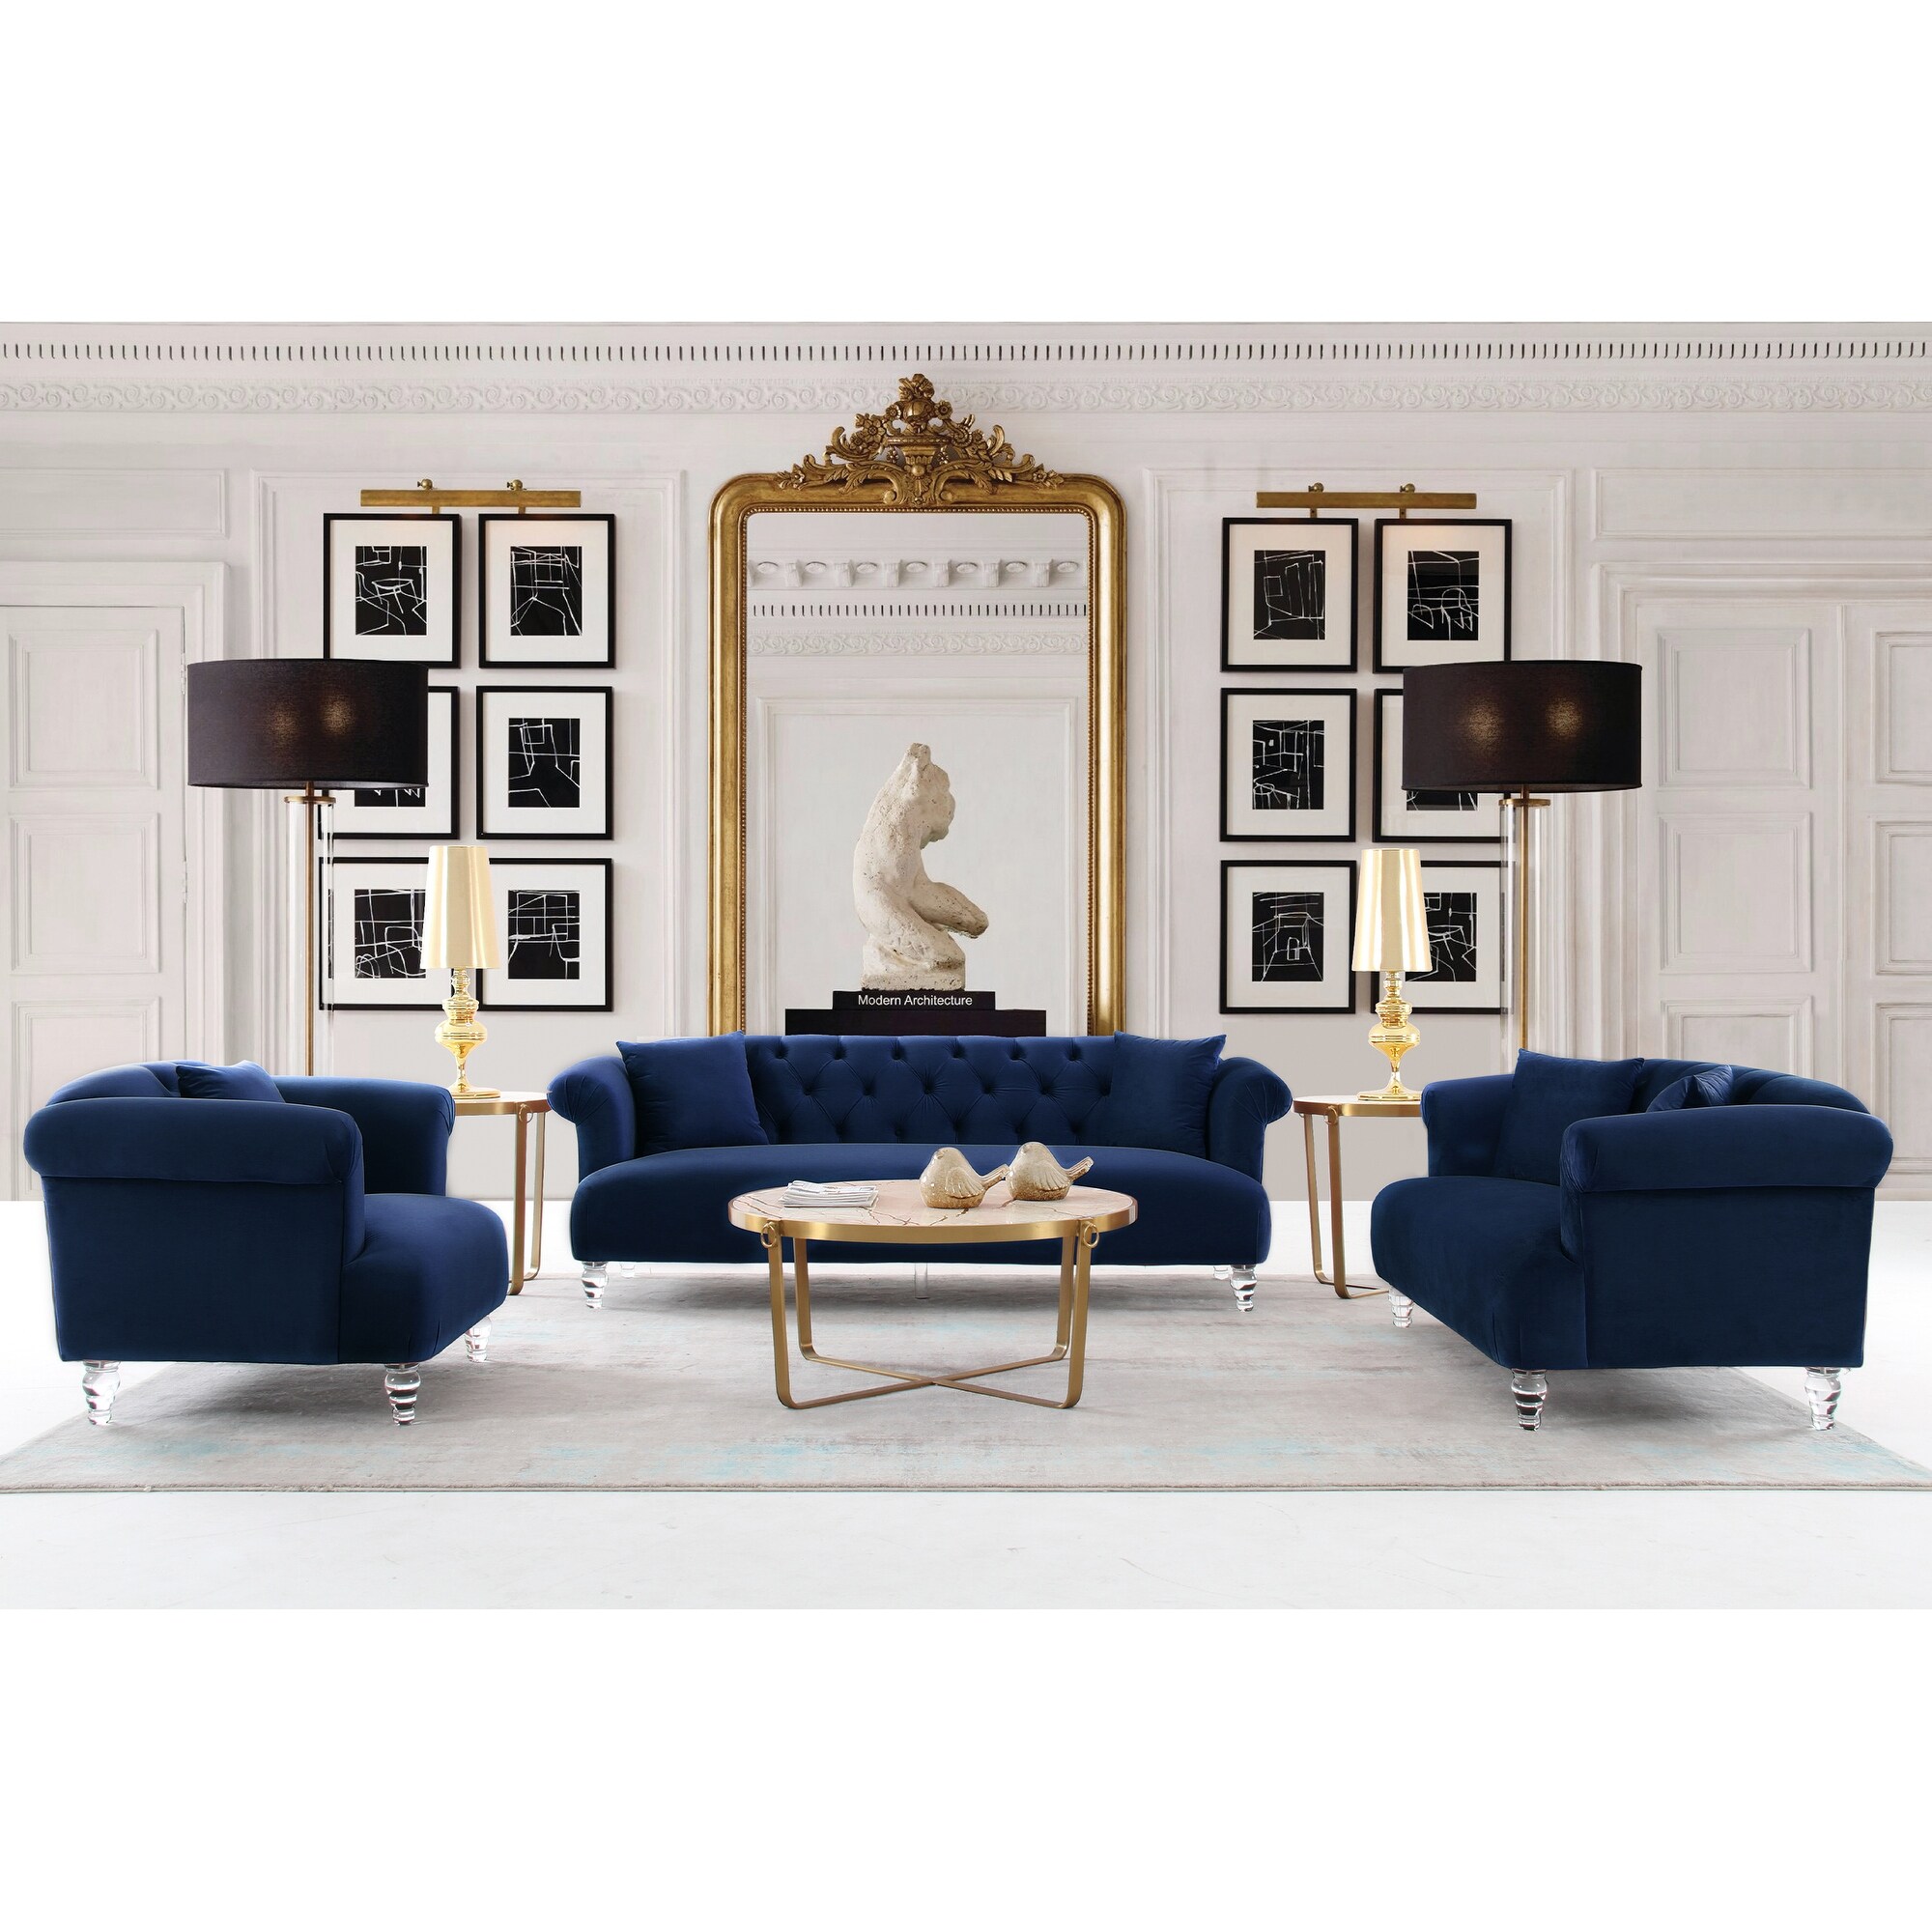 Armen Living Elegance Sofa in Velvet with Acrylic Legs - On Sale